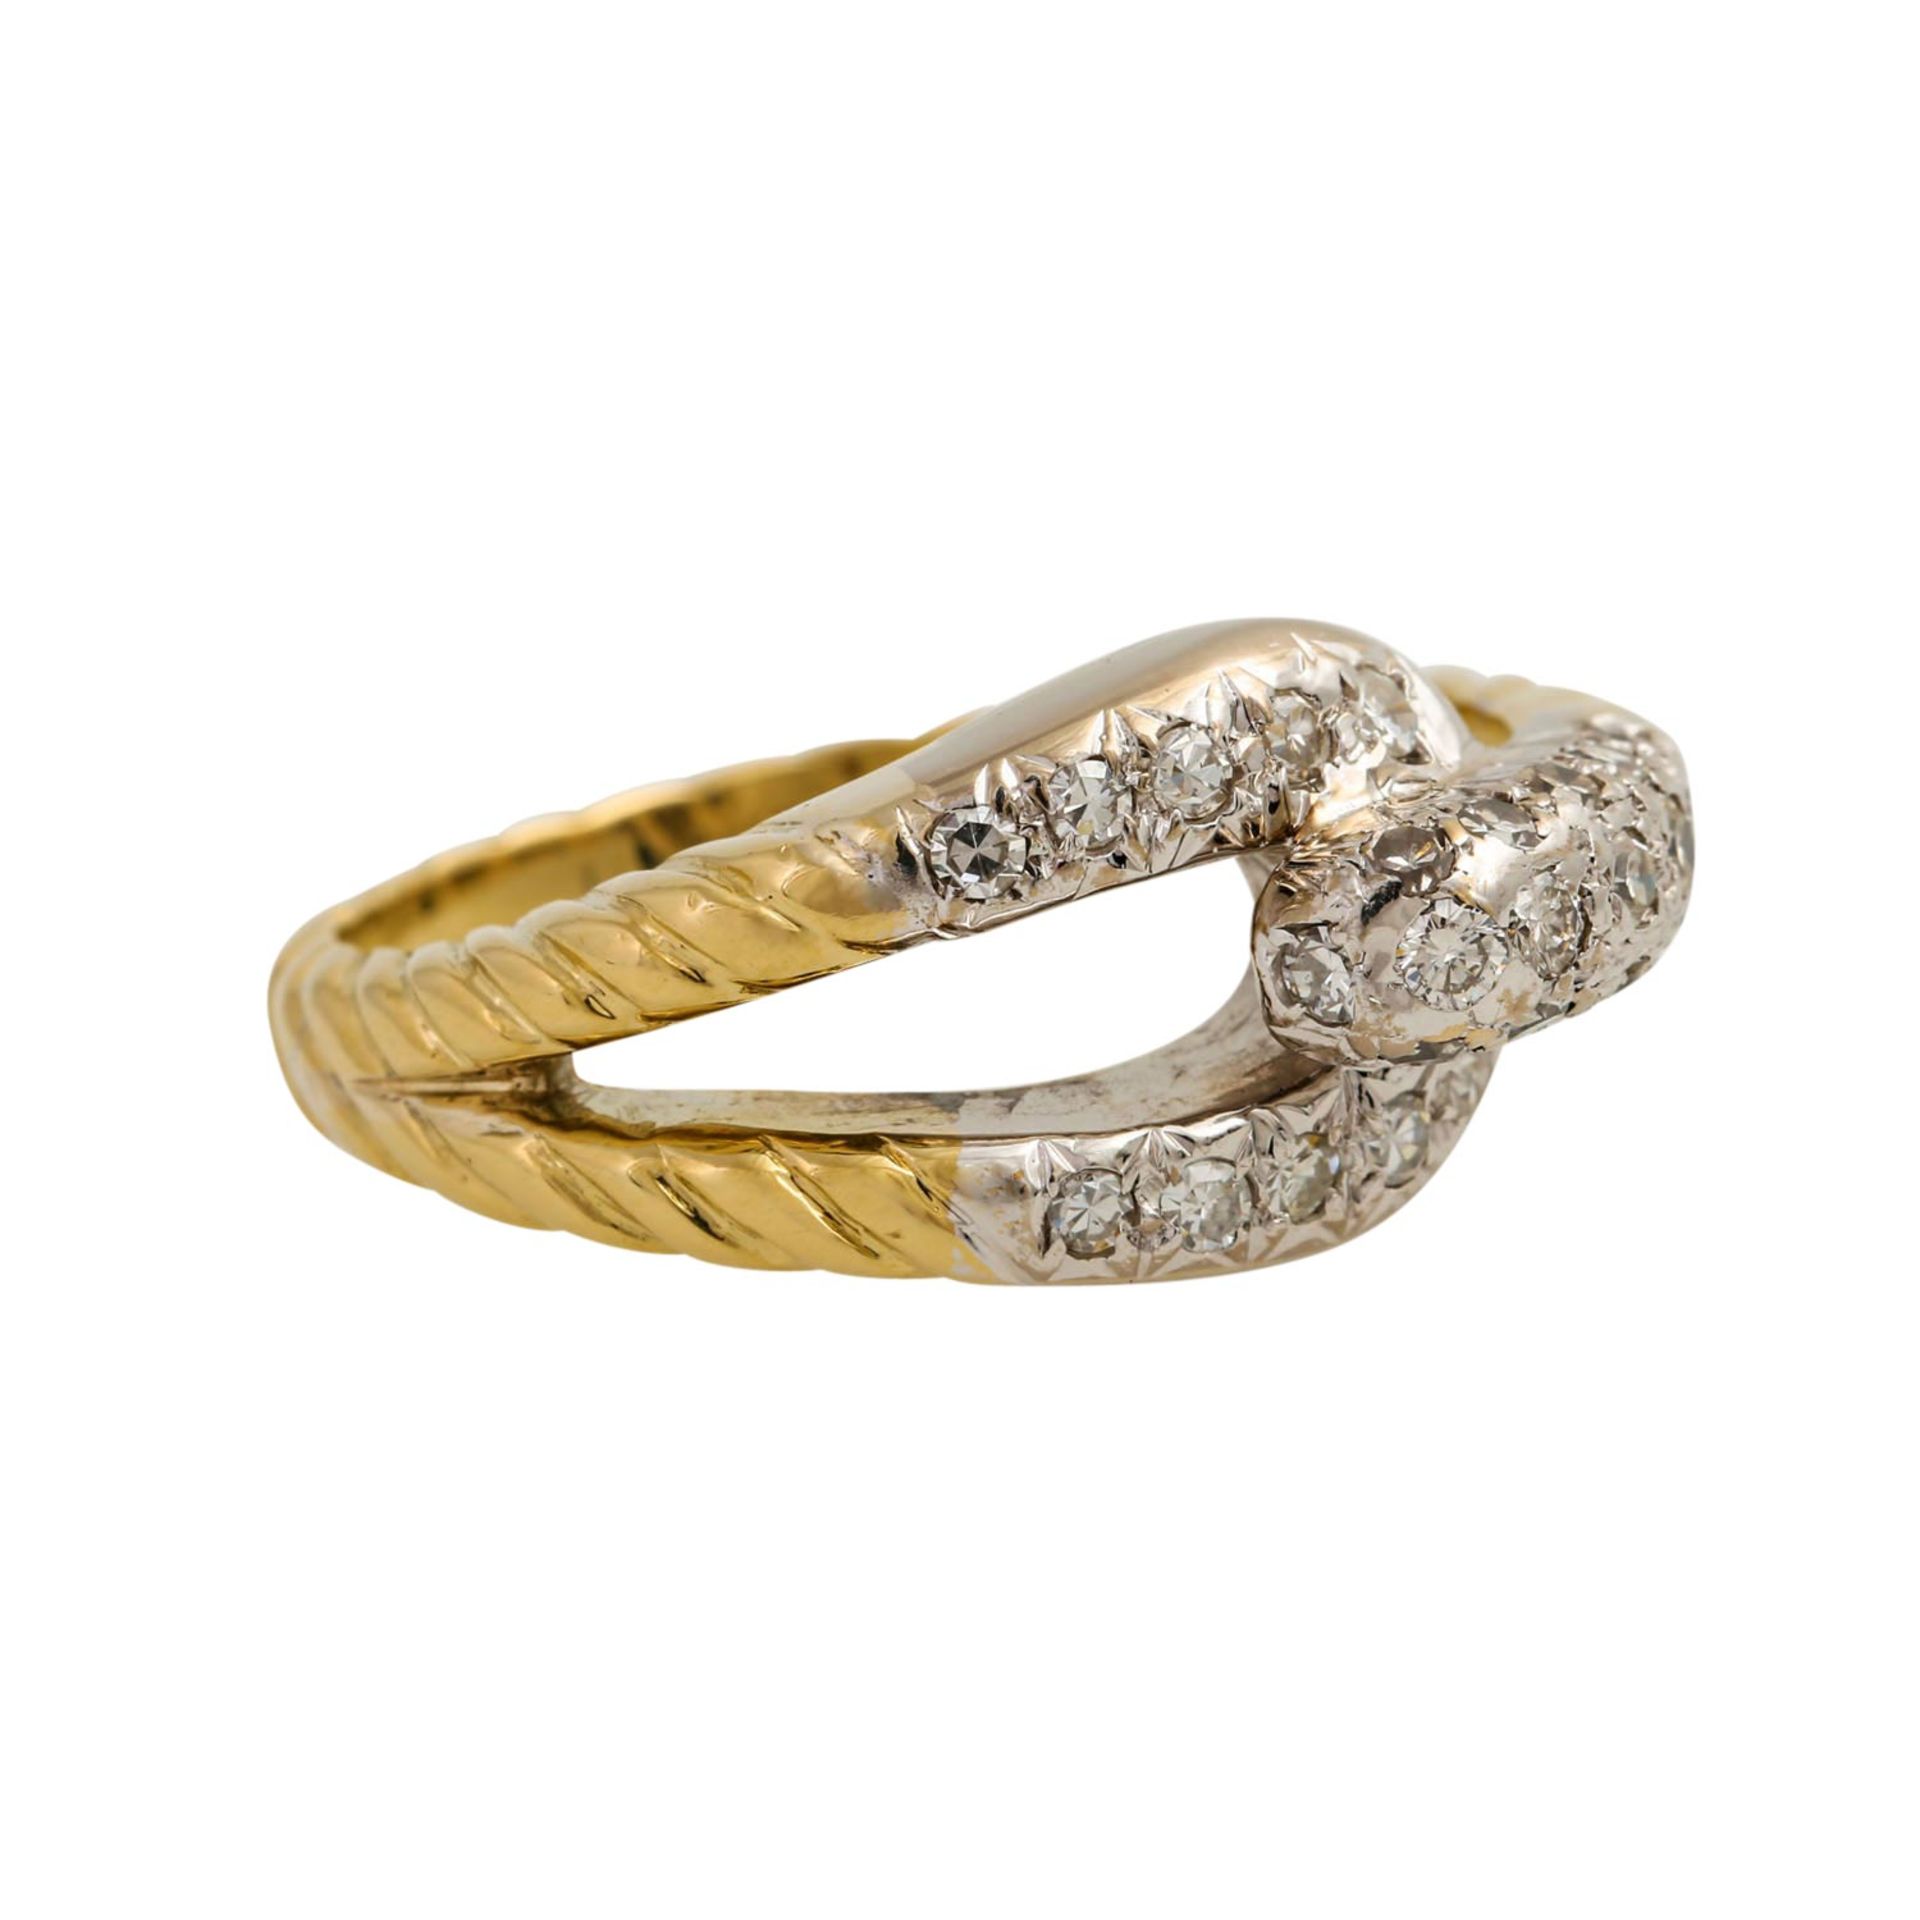 Ring mit Achtkantdiamanten zus. ca. 0,30 ct, gute Farbe u. Reinheit, GG 14K teilw. rho - Bild 2 aus 5